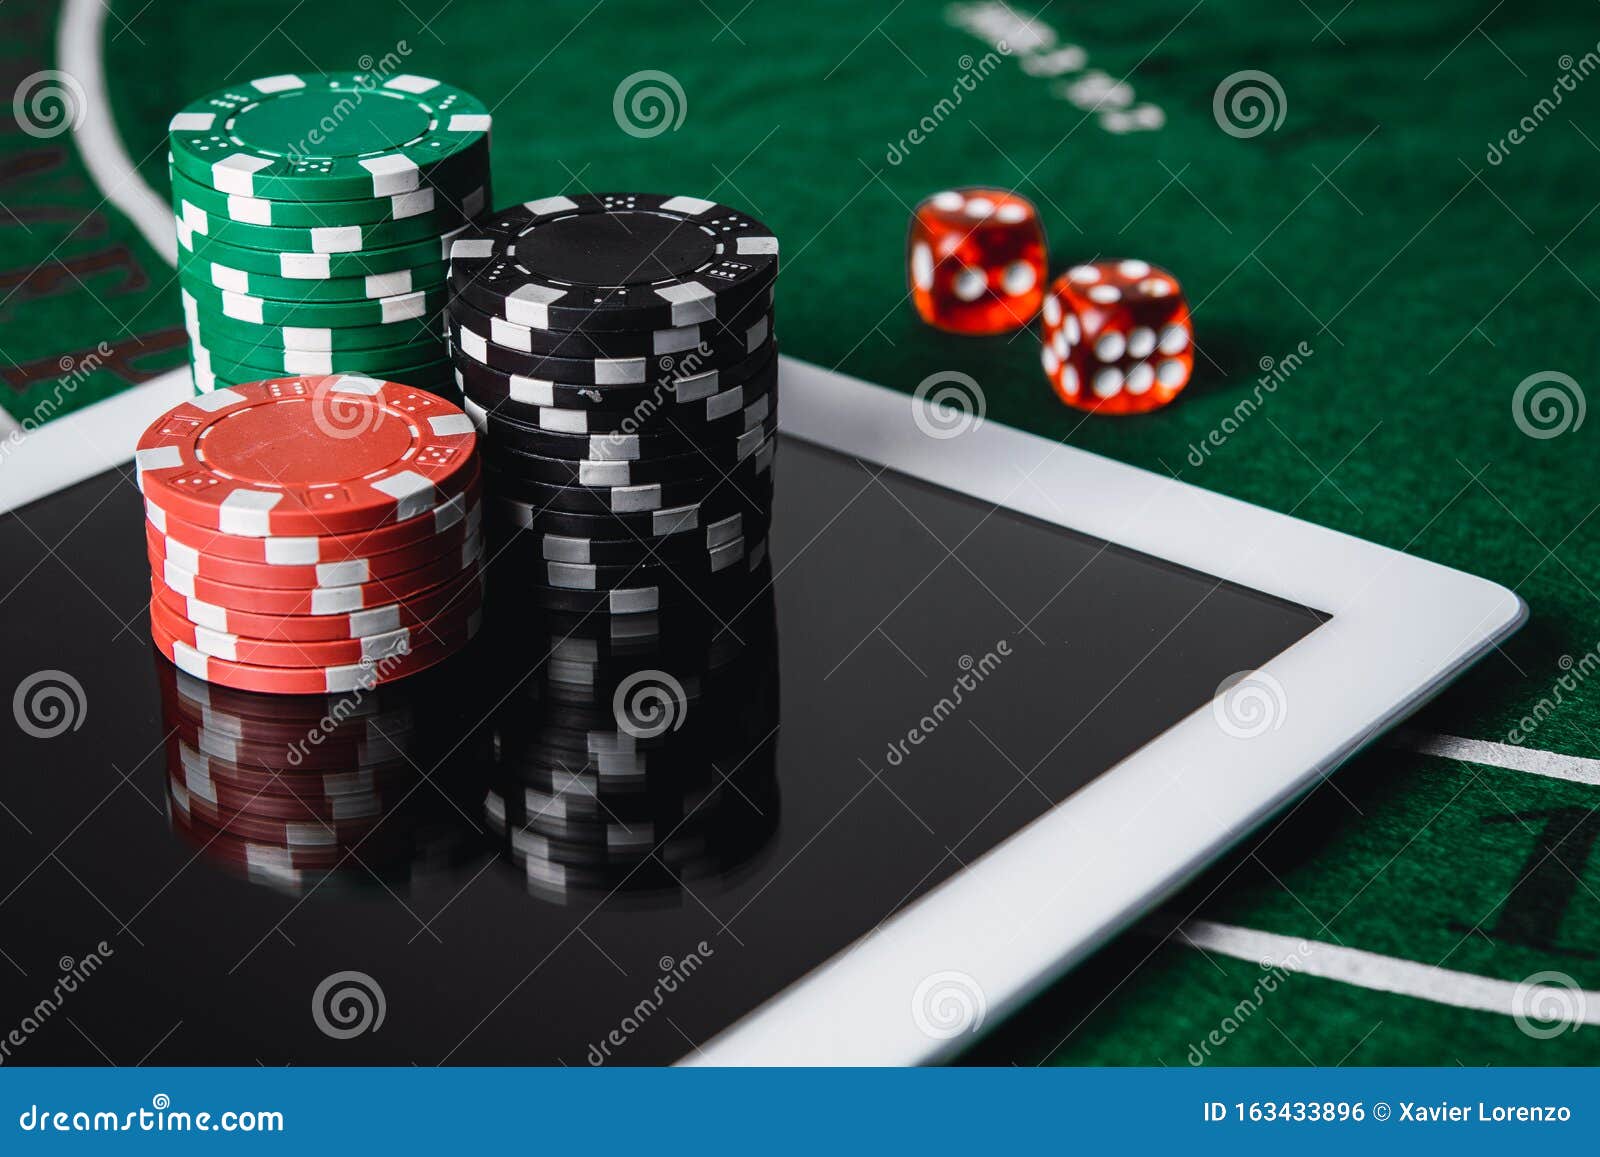 Cree en tus habilidades de jugar en el casino en línea pero nunca dejes de mejorar